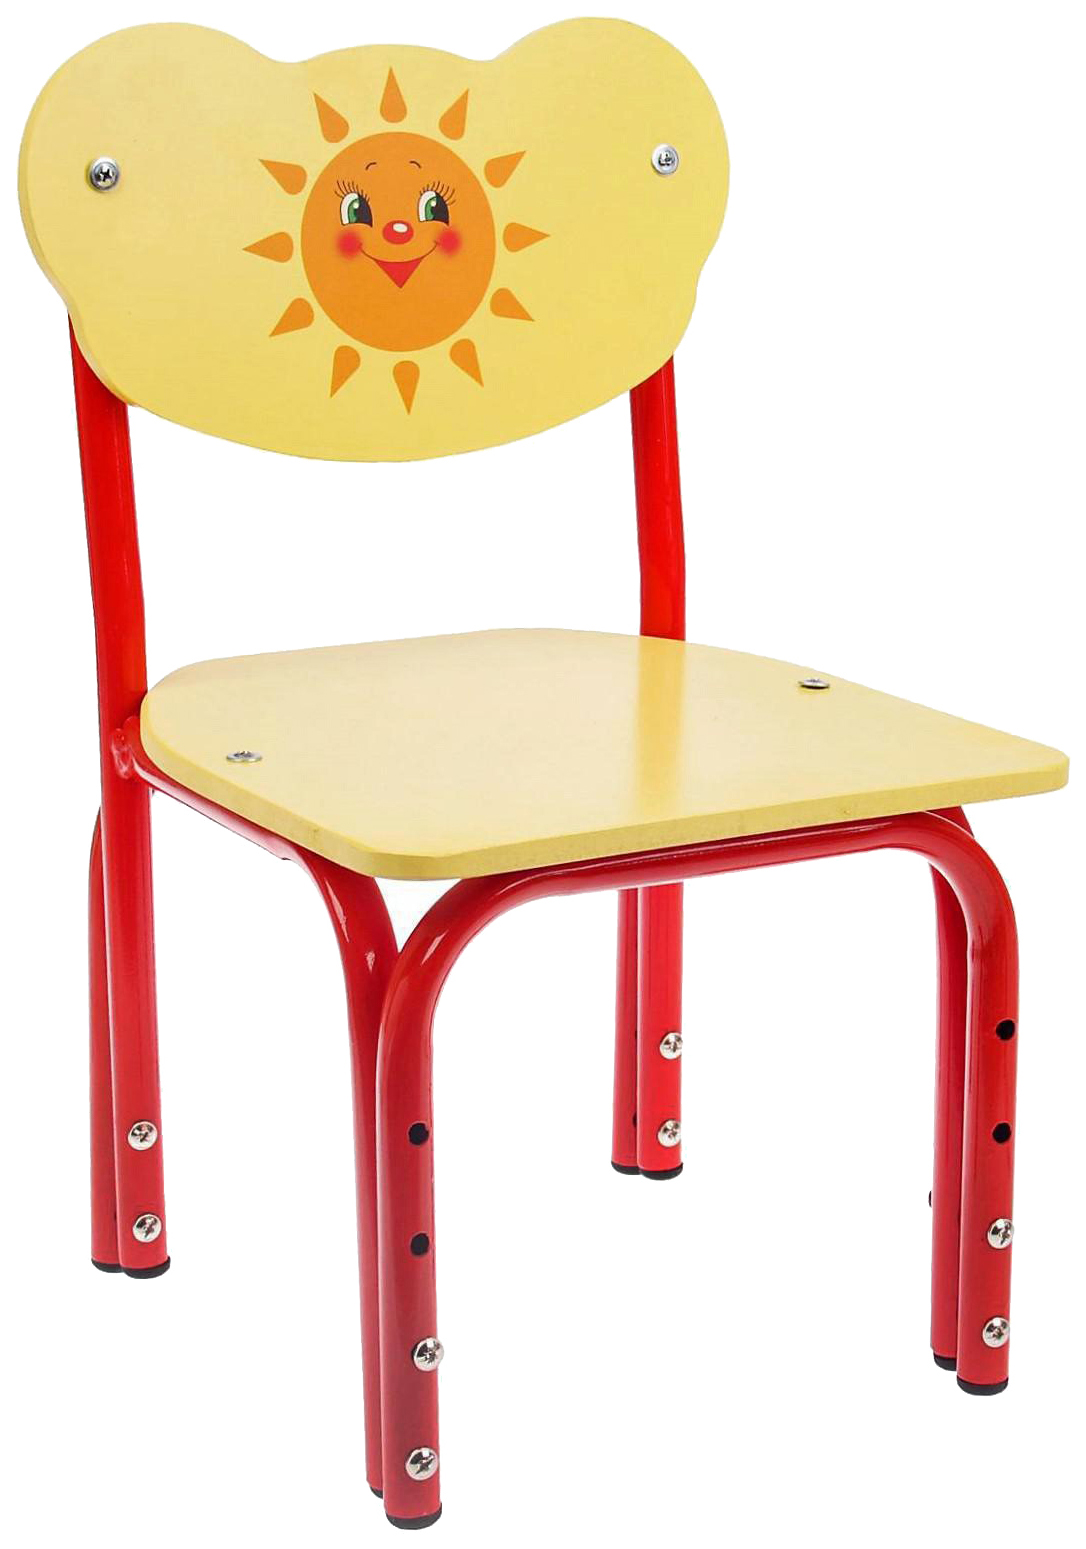 Детский стул Кузя. Солнышко, регулируемый, разборный журнал кузя и друзья